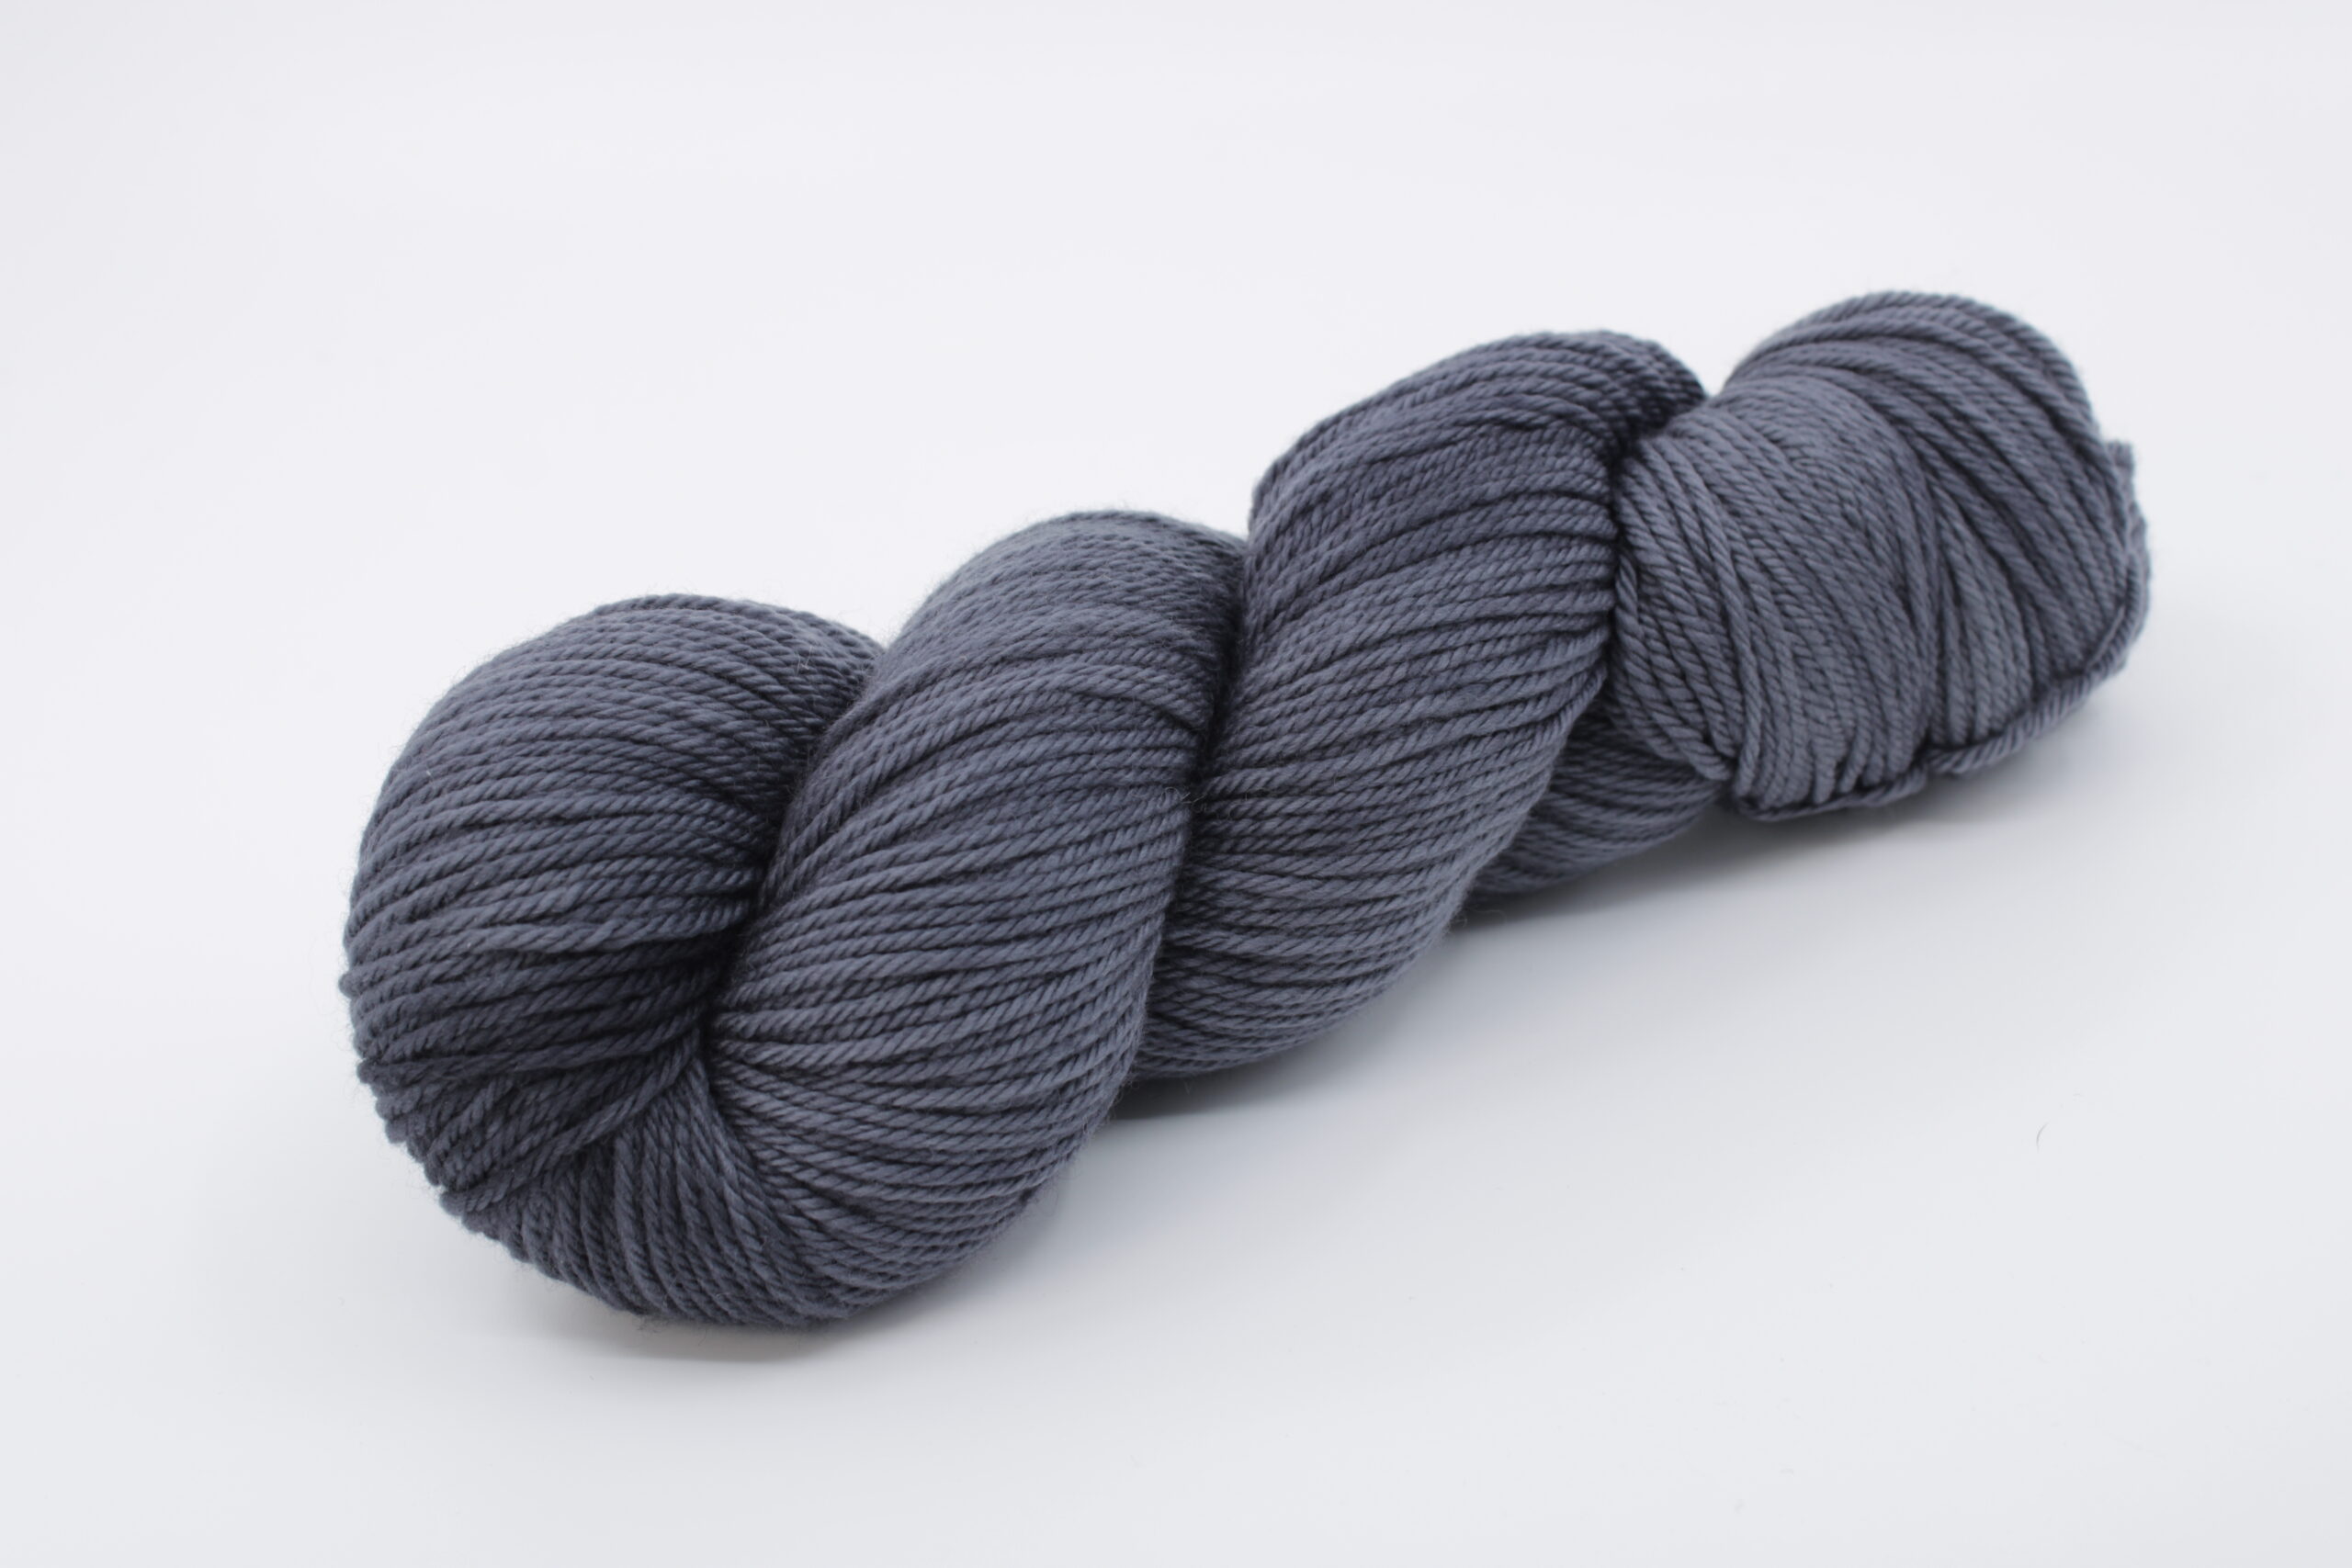 Fibrani wool, base: Flocon DK. 100% untreated merino wool, grey color. Color: Orage.